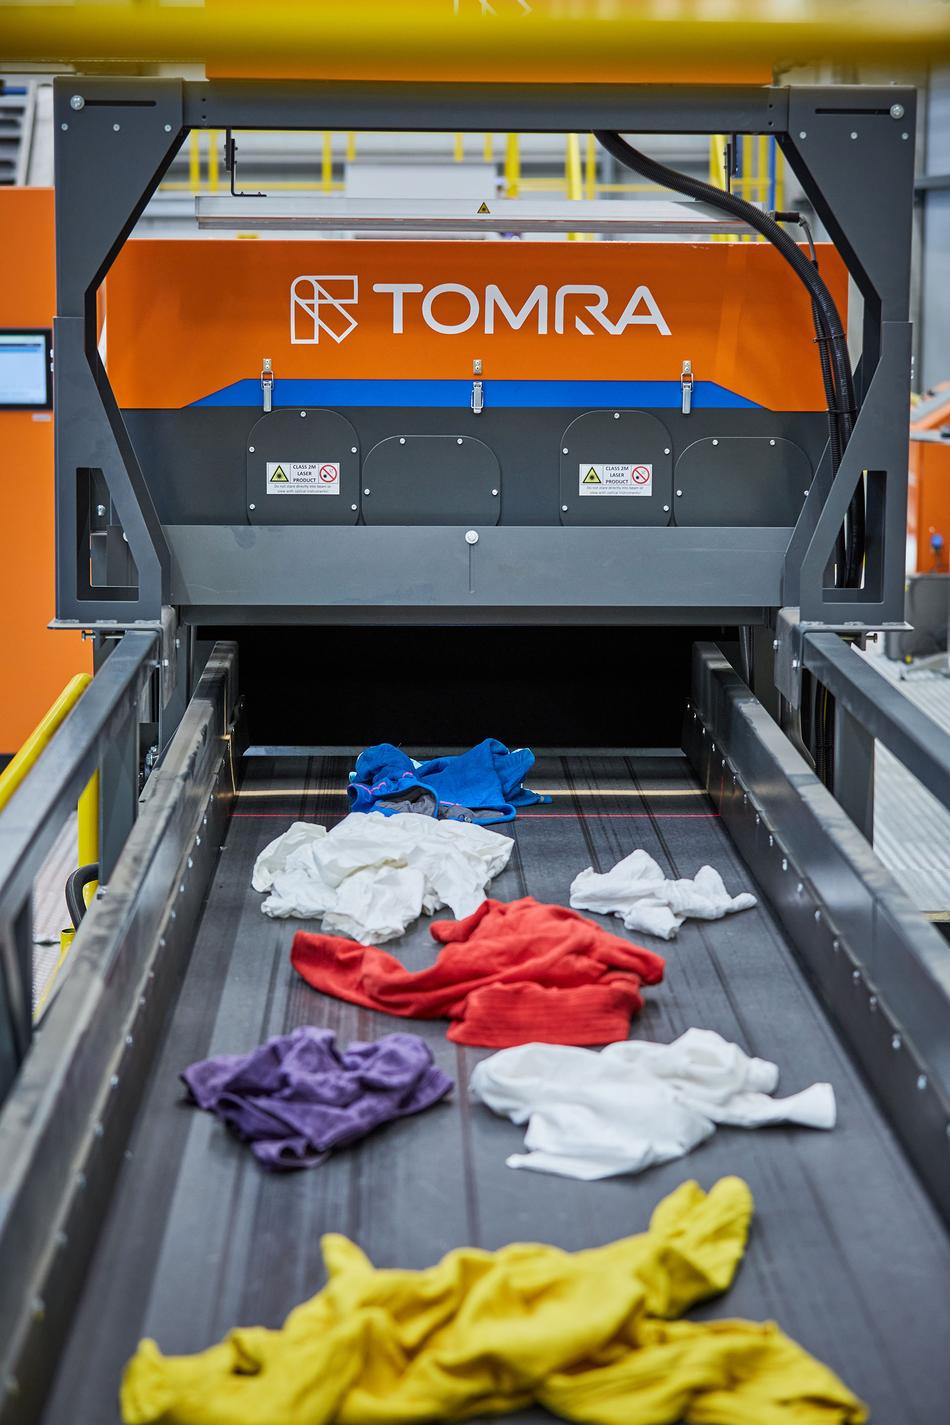 Textiles sobre una cinta de clasificación de la máquina de TOMRA